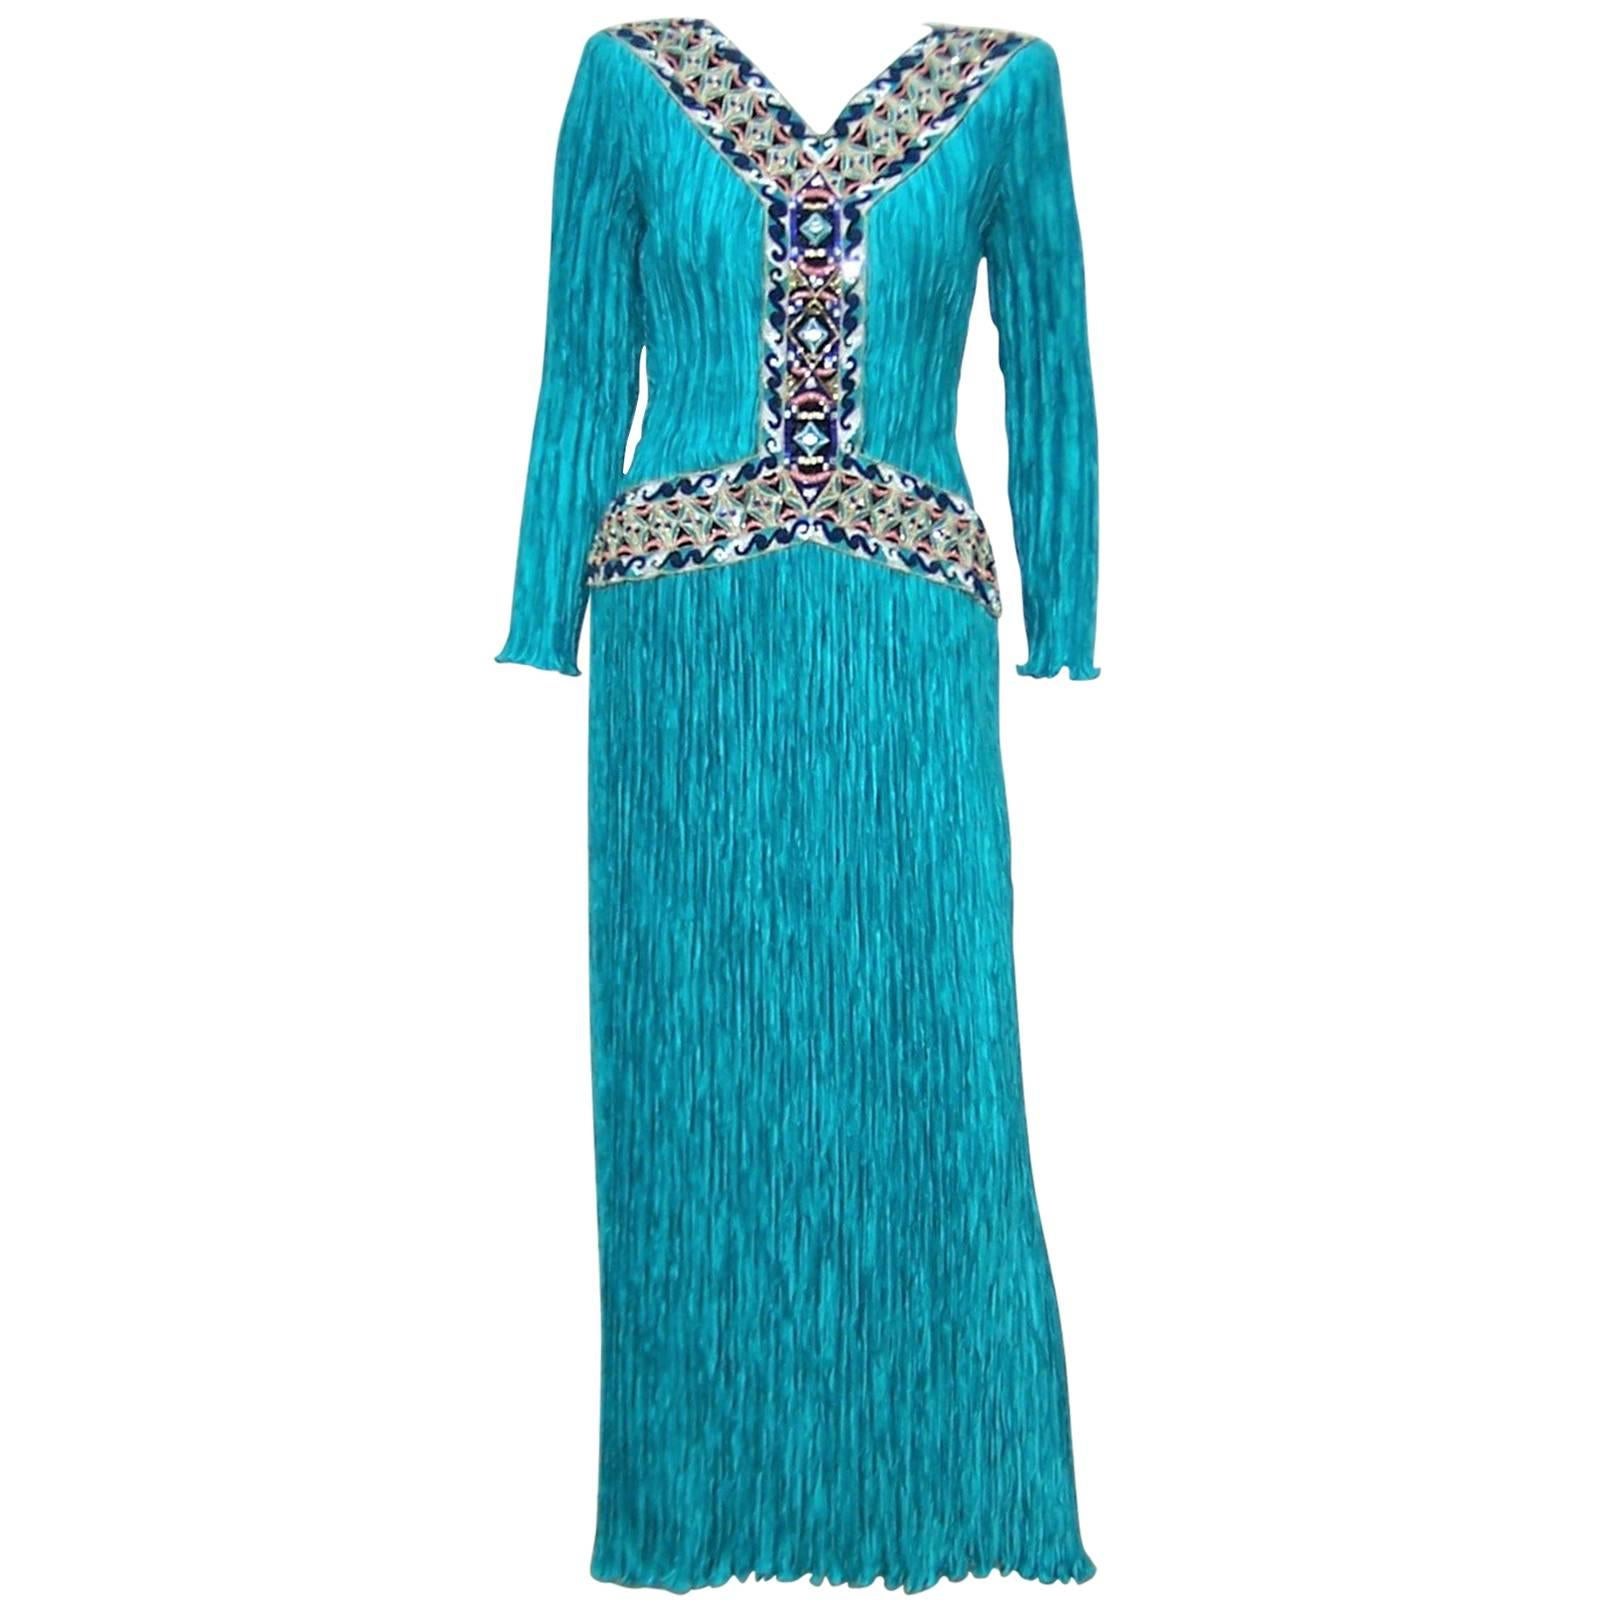 Cleopatra Style 1980's Mary McFadden Turquoise Goddess Dress